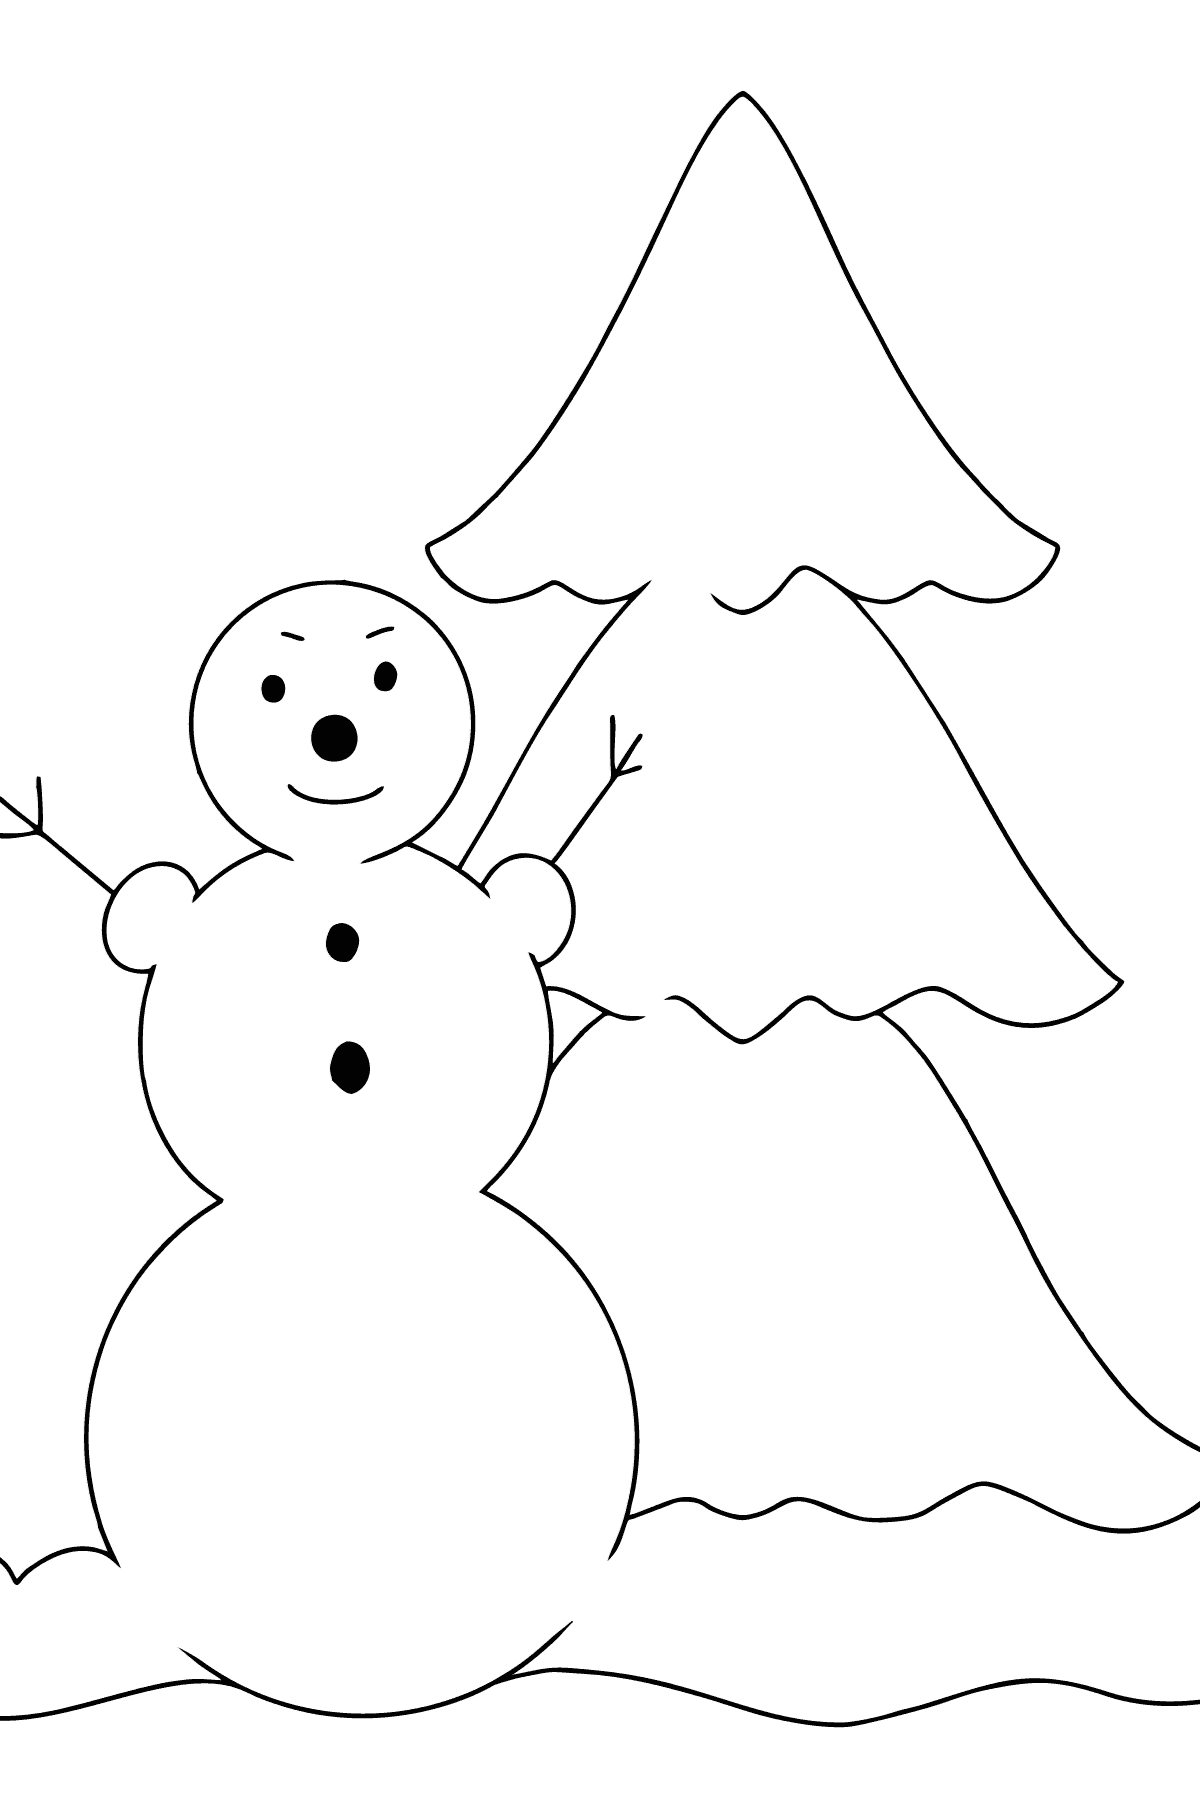 Boyama sayfası kardan adam ve ağaç (kolay) - Boyamalar çocuklar için